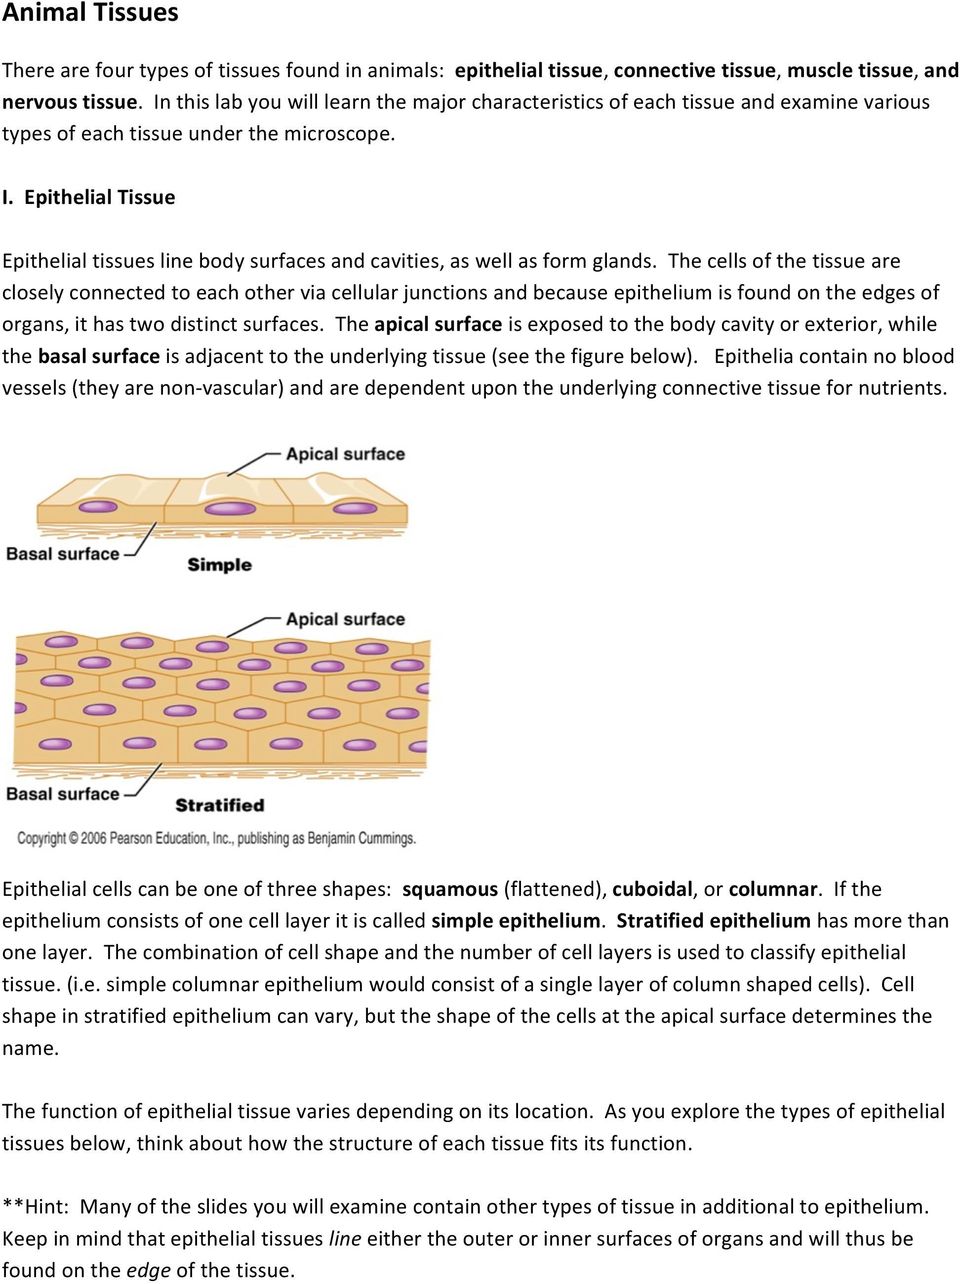 Animal Tissues. I. Epithelial Tissue - PDF Free Download